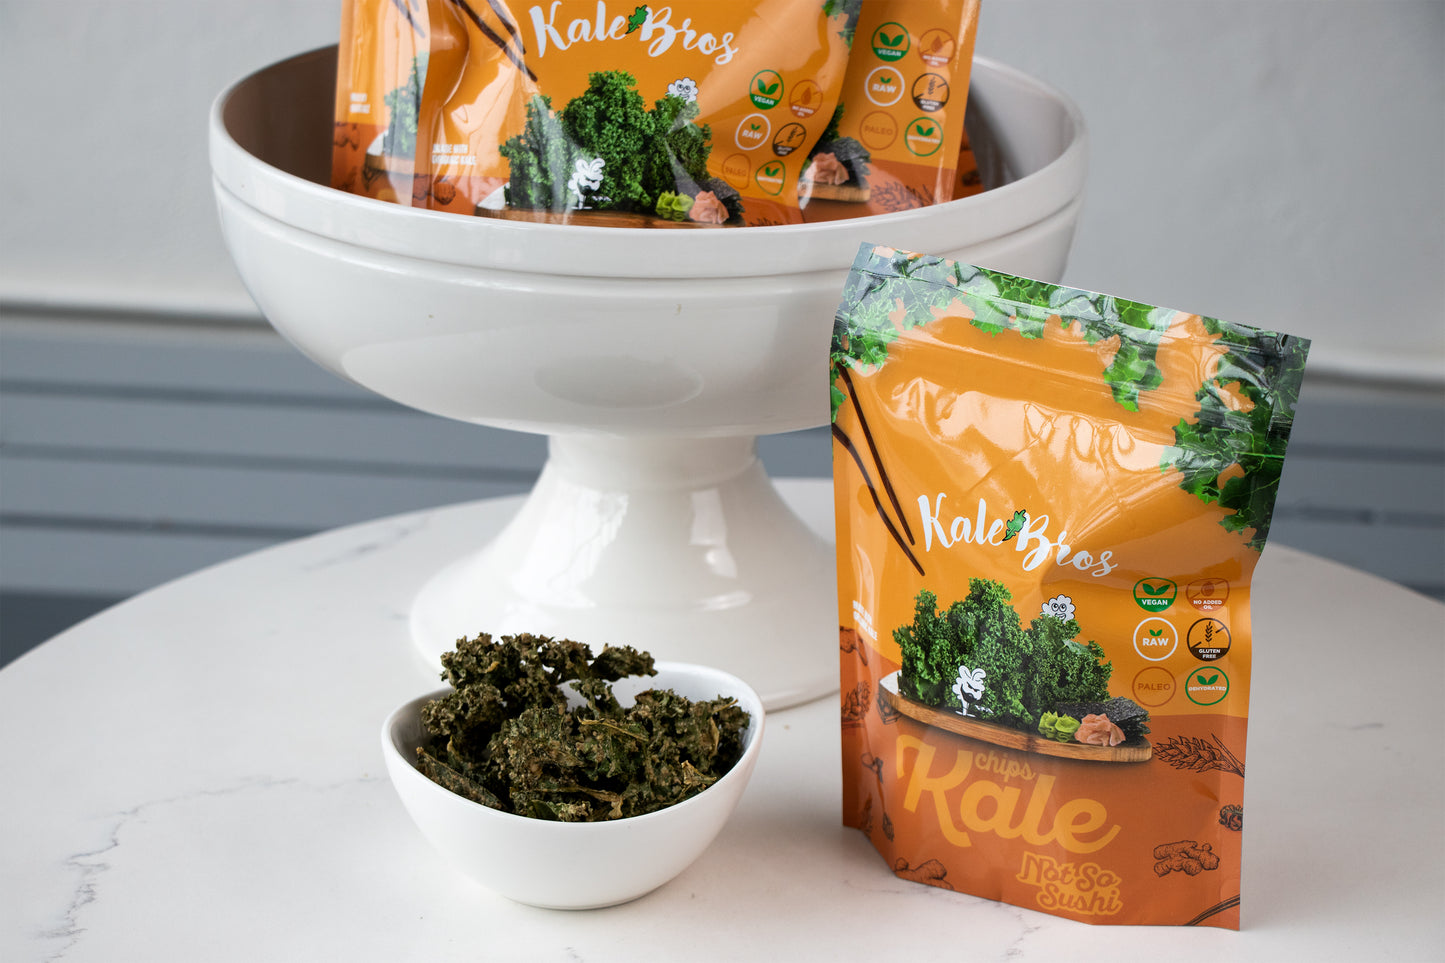 Not-So Sushi - Kale Bros